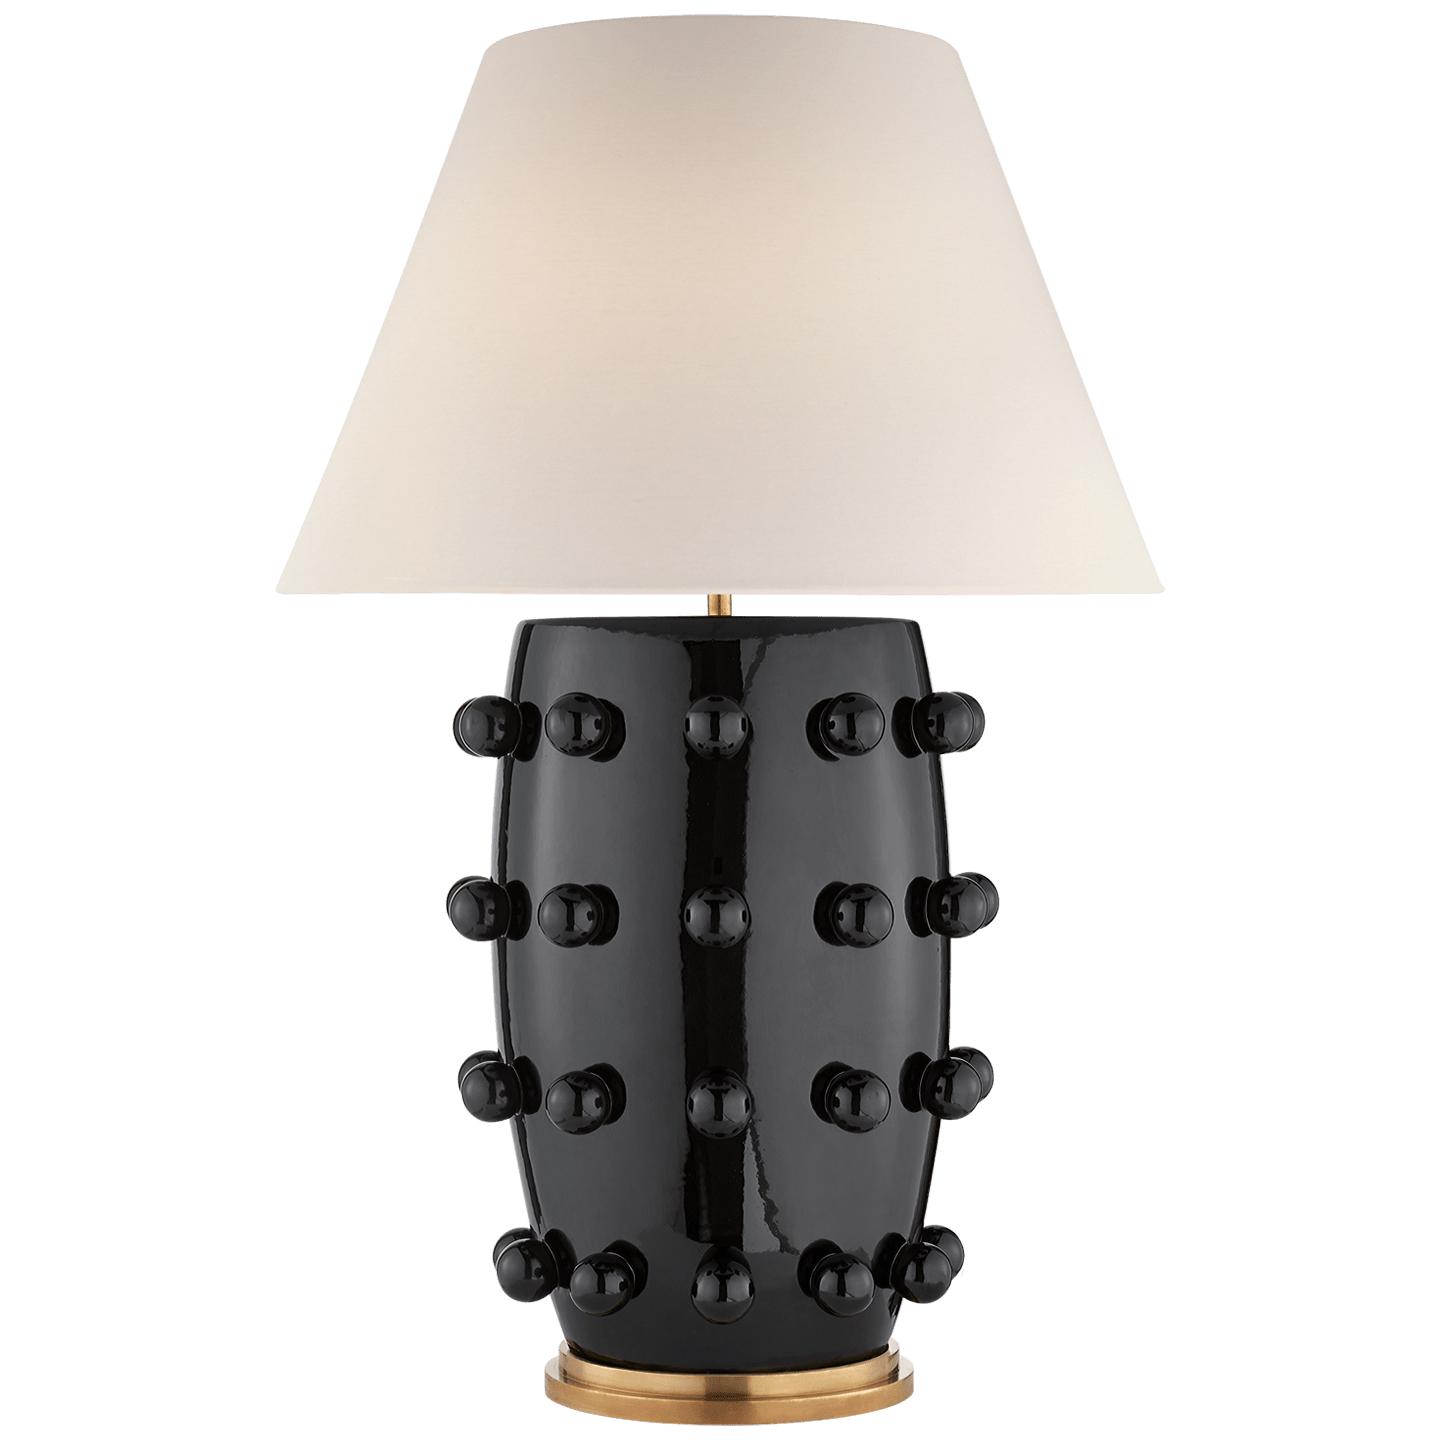 Купить Настольная лампа Linden Table Lamp в интернет-магазине roooms.ru